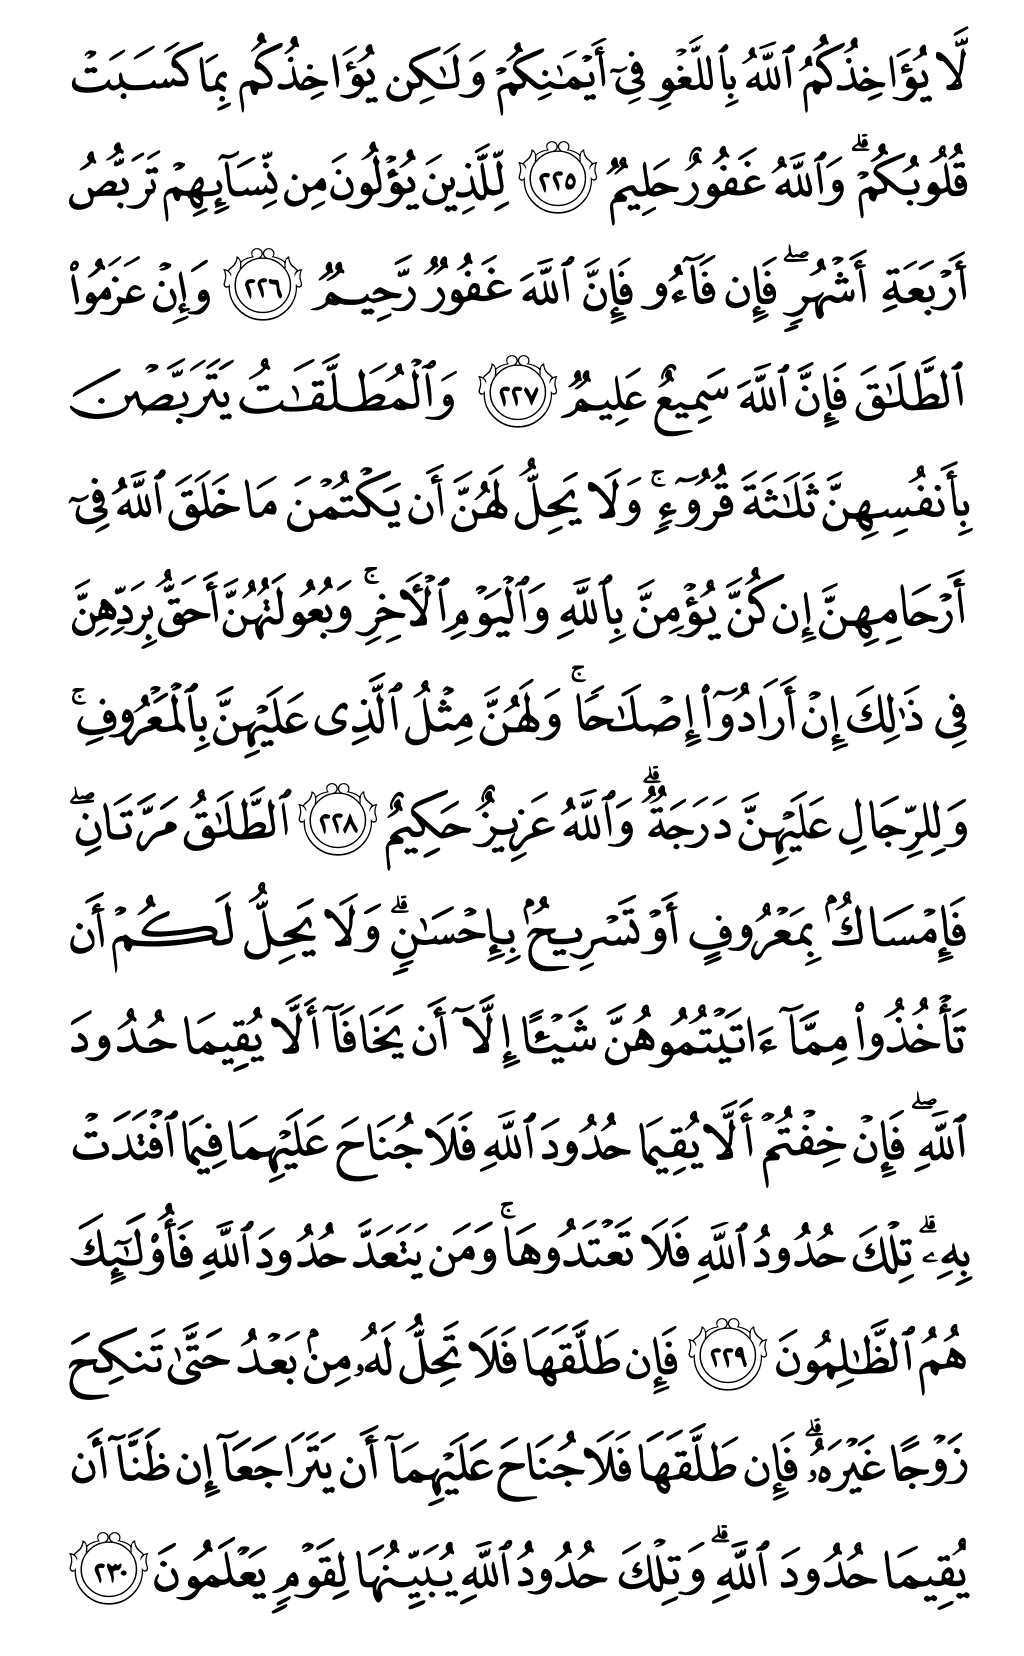 الصفحة رقم 36 من القرآن الكريم